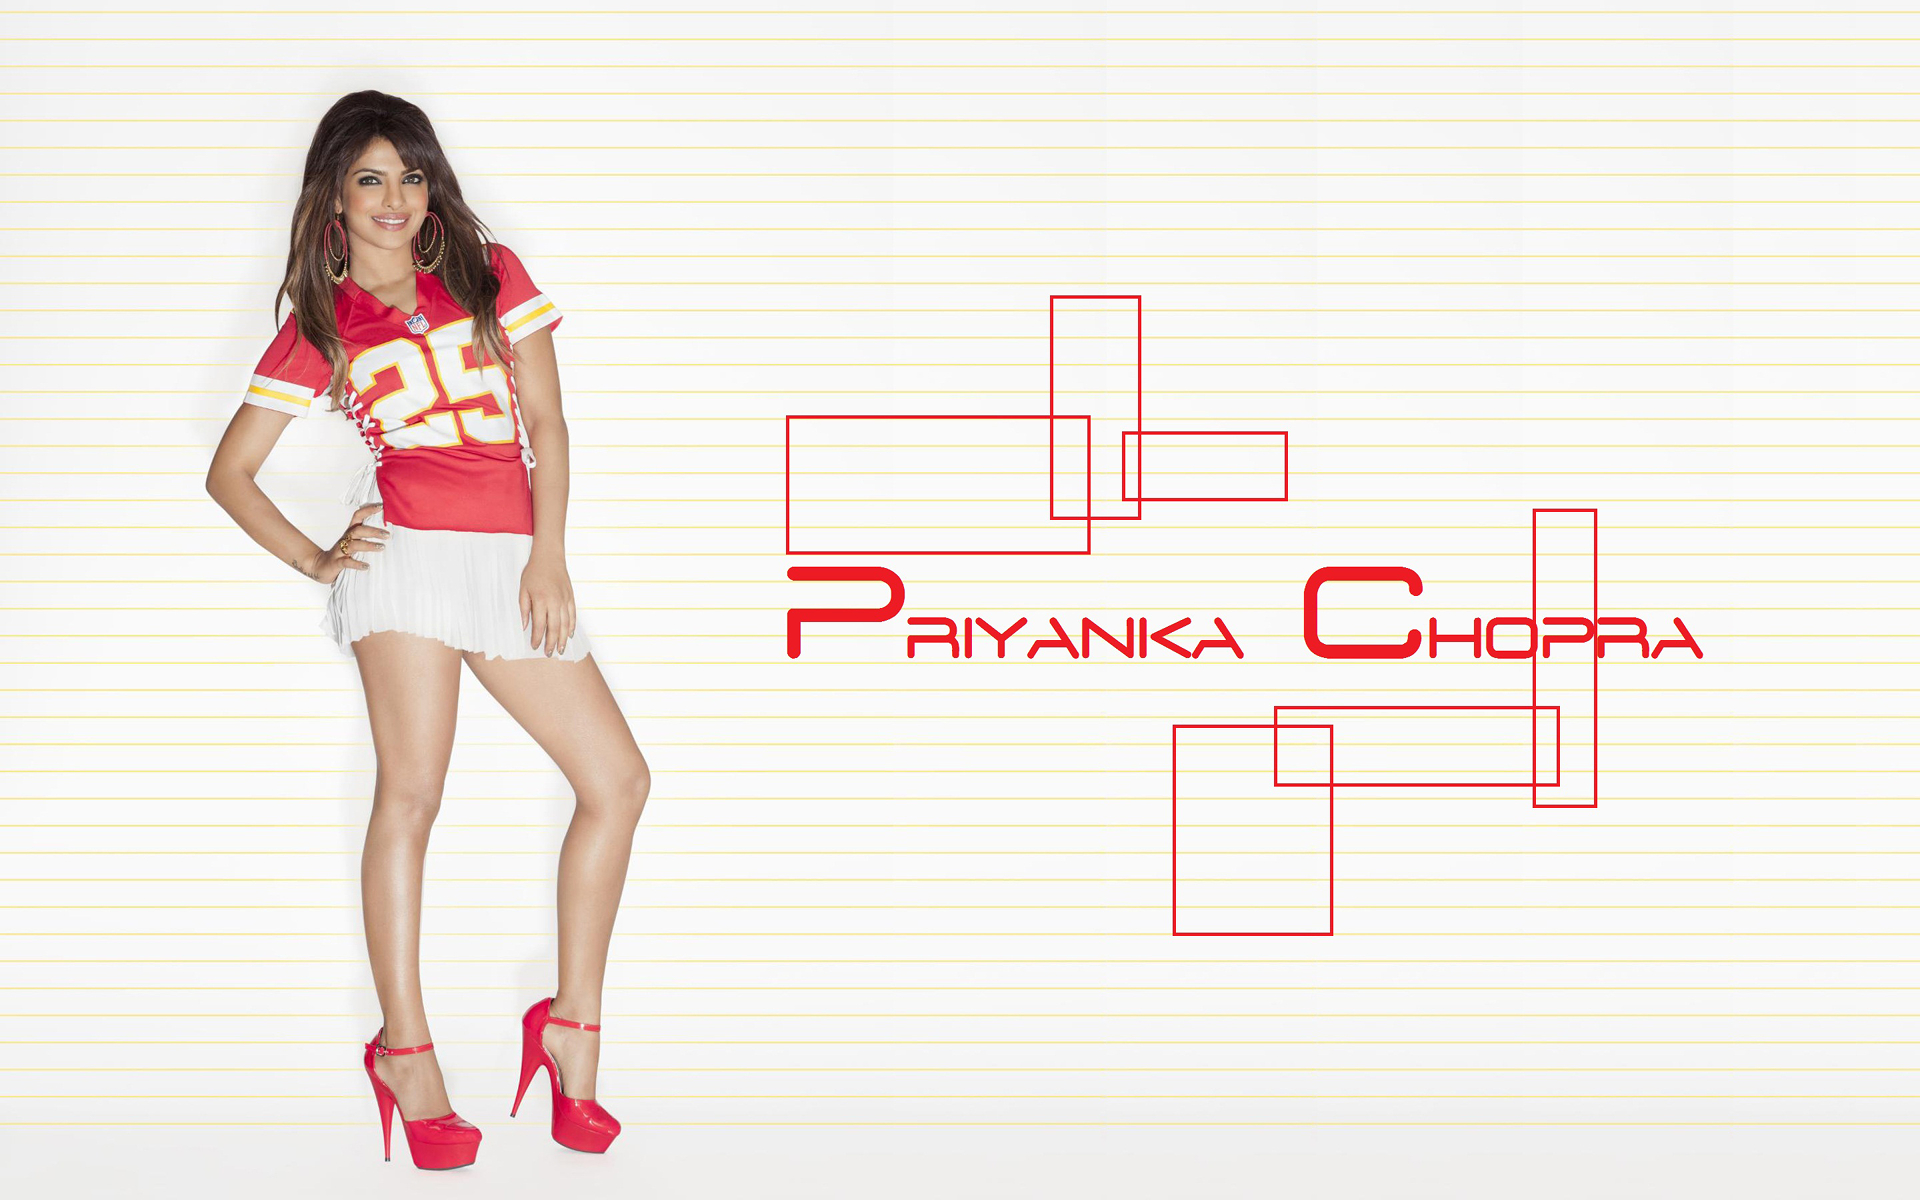 Descarga gratuita de fondo de pantalla para móvil de Celebridades, Priyanka Chopra.